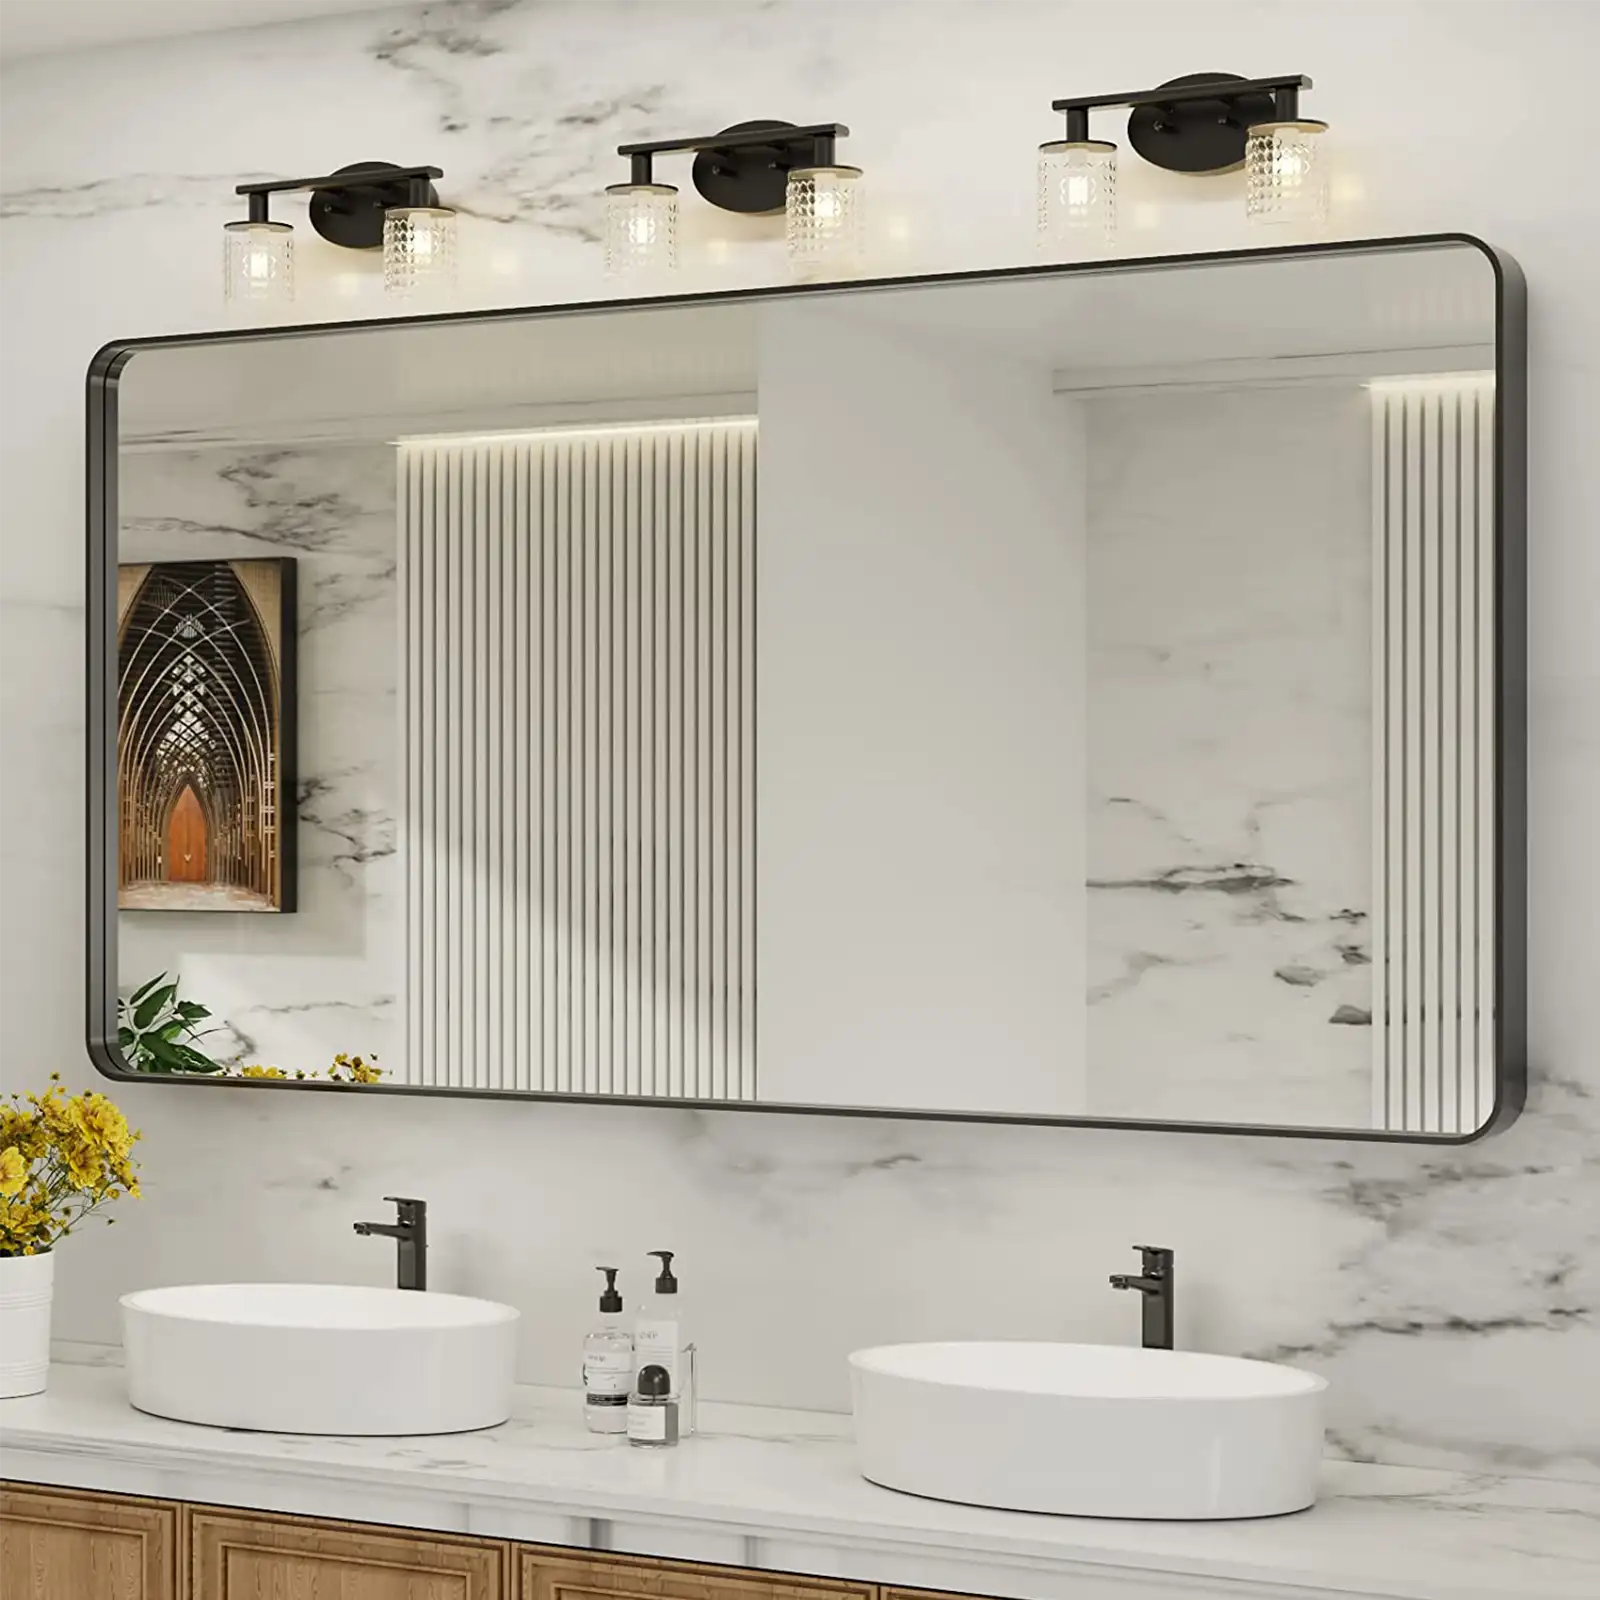 Espejo de baño con marco de metal negro para pared, espejo de tocador de baño negro mate, espejo rectangular redondeado grande, antioxidante, inastillable, se cuelga horizontal o verticalmente 